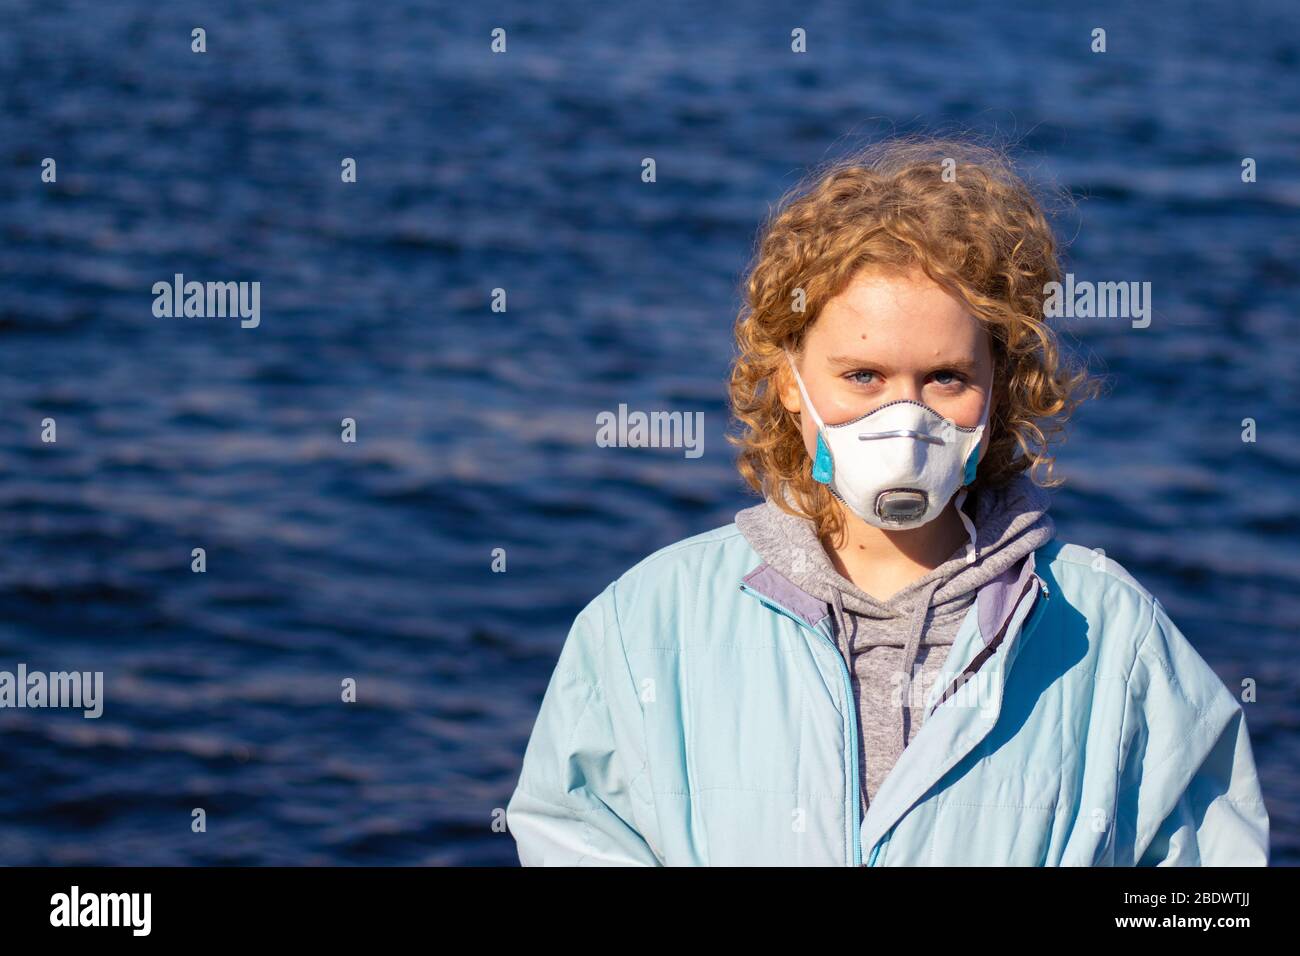 Une fille dans un masque de protection médicale sur son visage regarde l'appareil photo avec un fond d'eau bleue. Femme avec cheveux corbiels blond. Espace de copie Banque D'Images